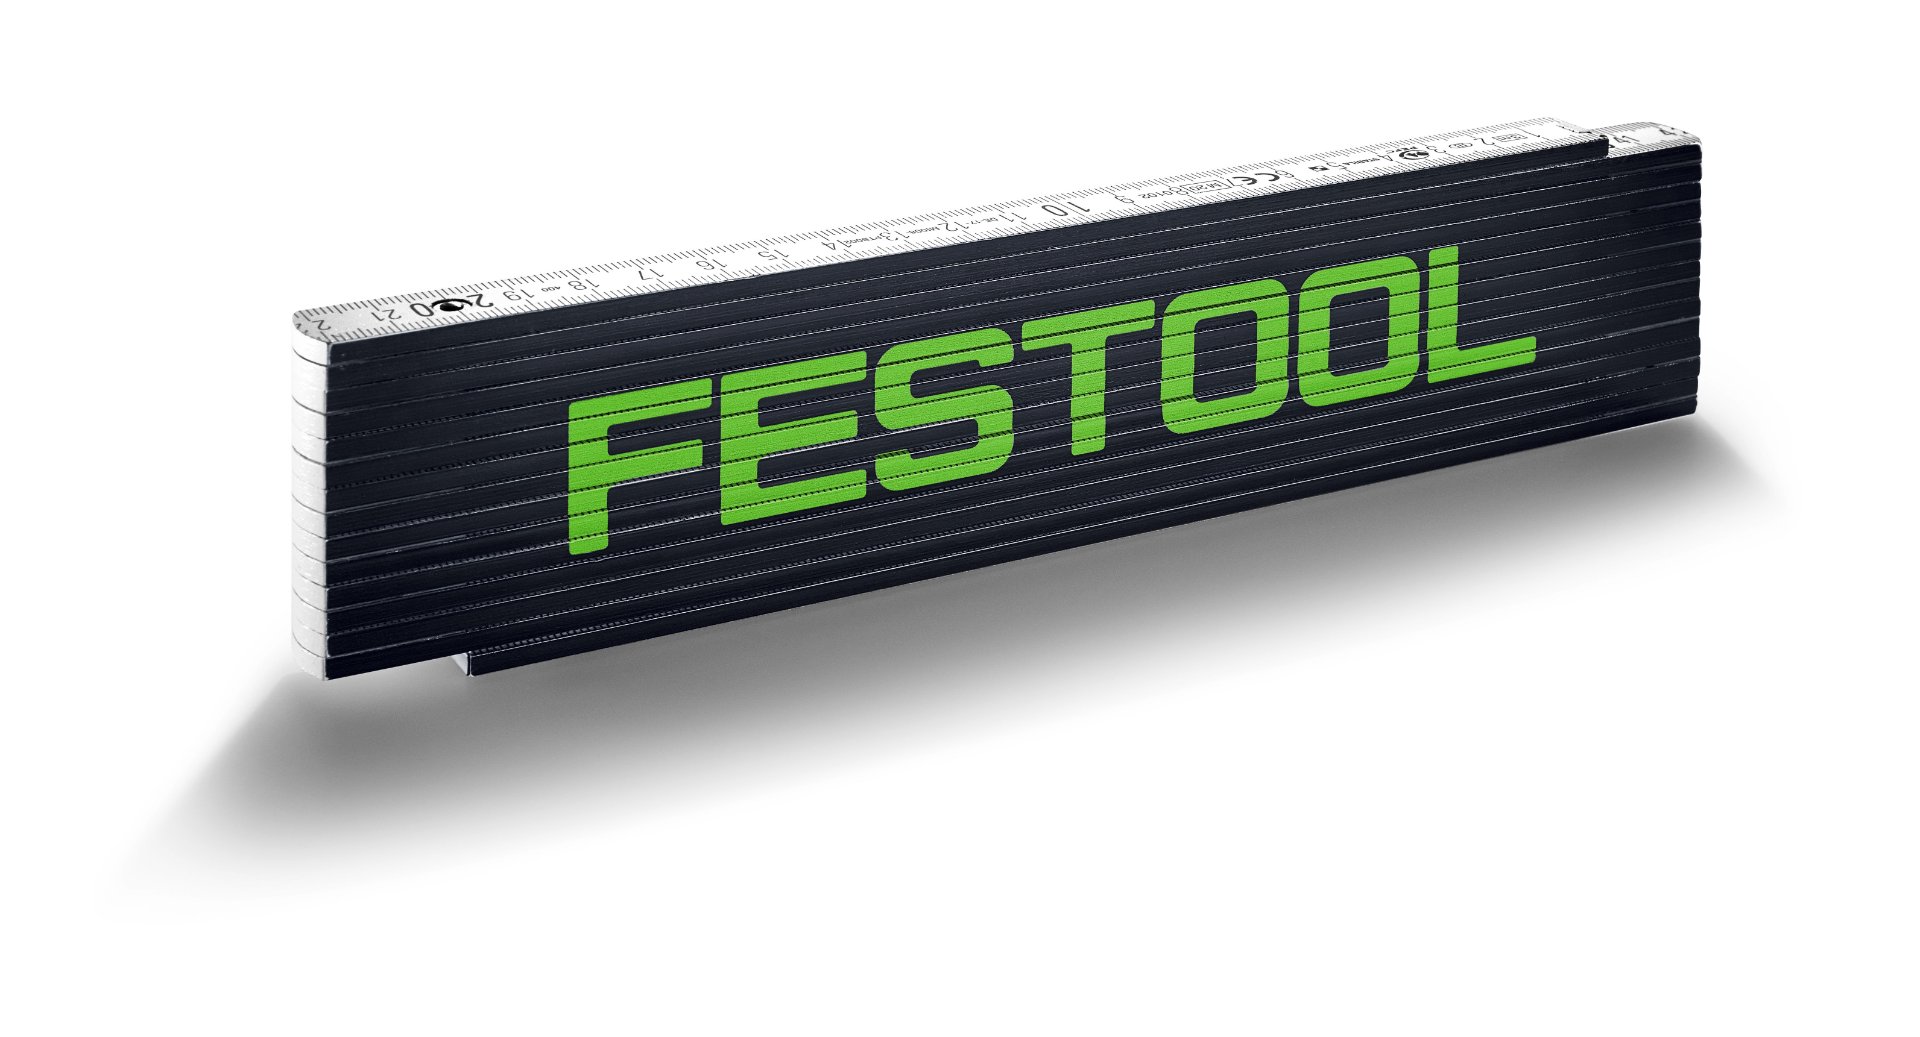 Festool Meterstab MS-3M-FT1